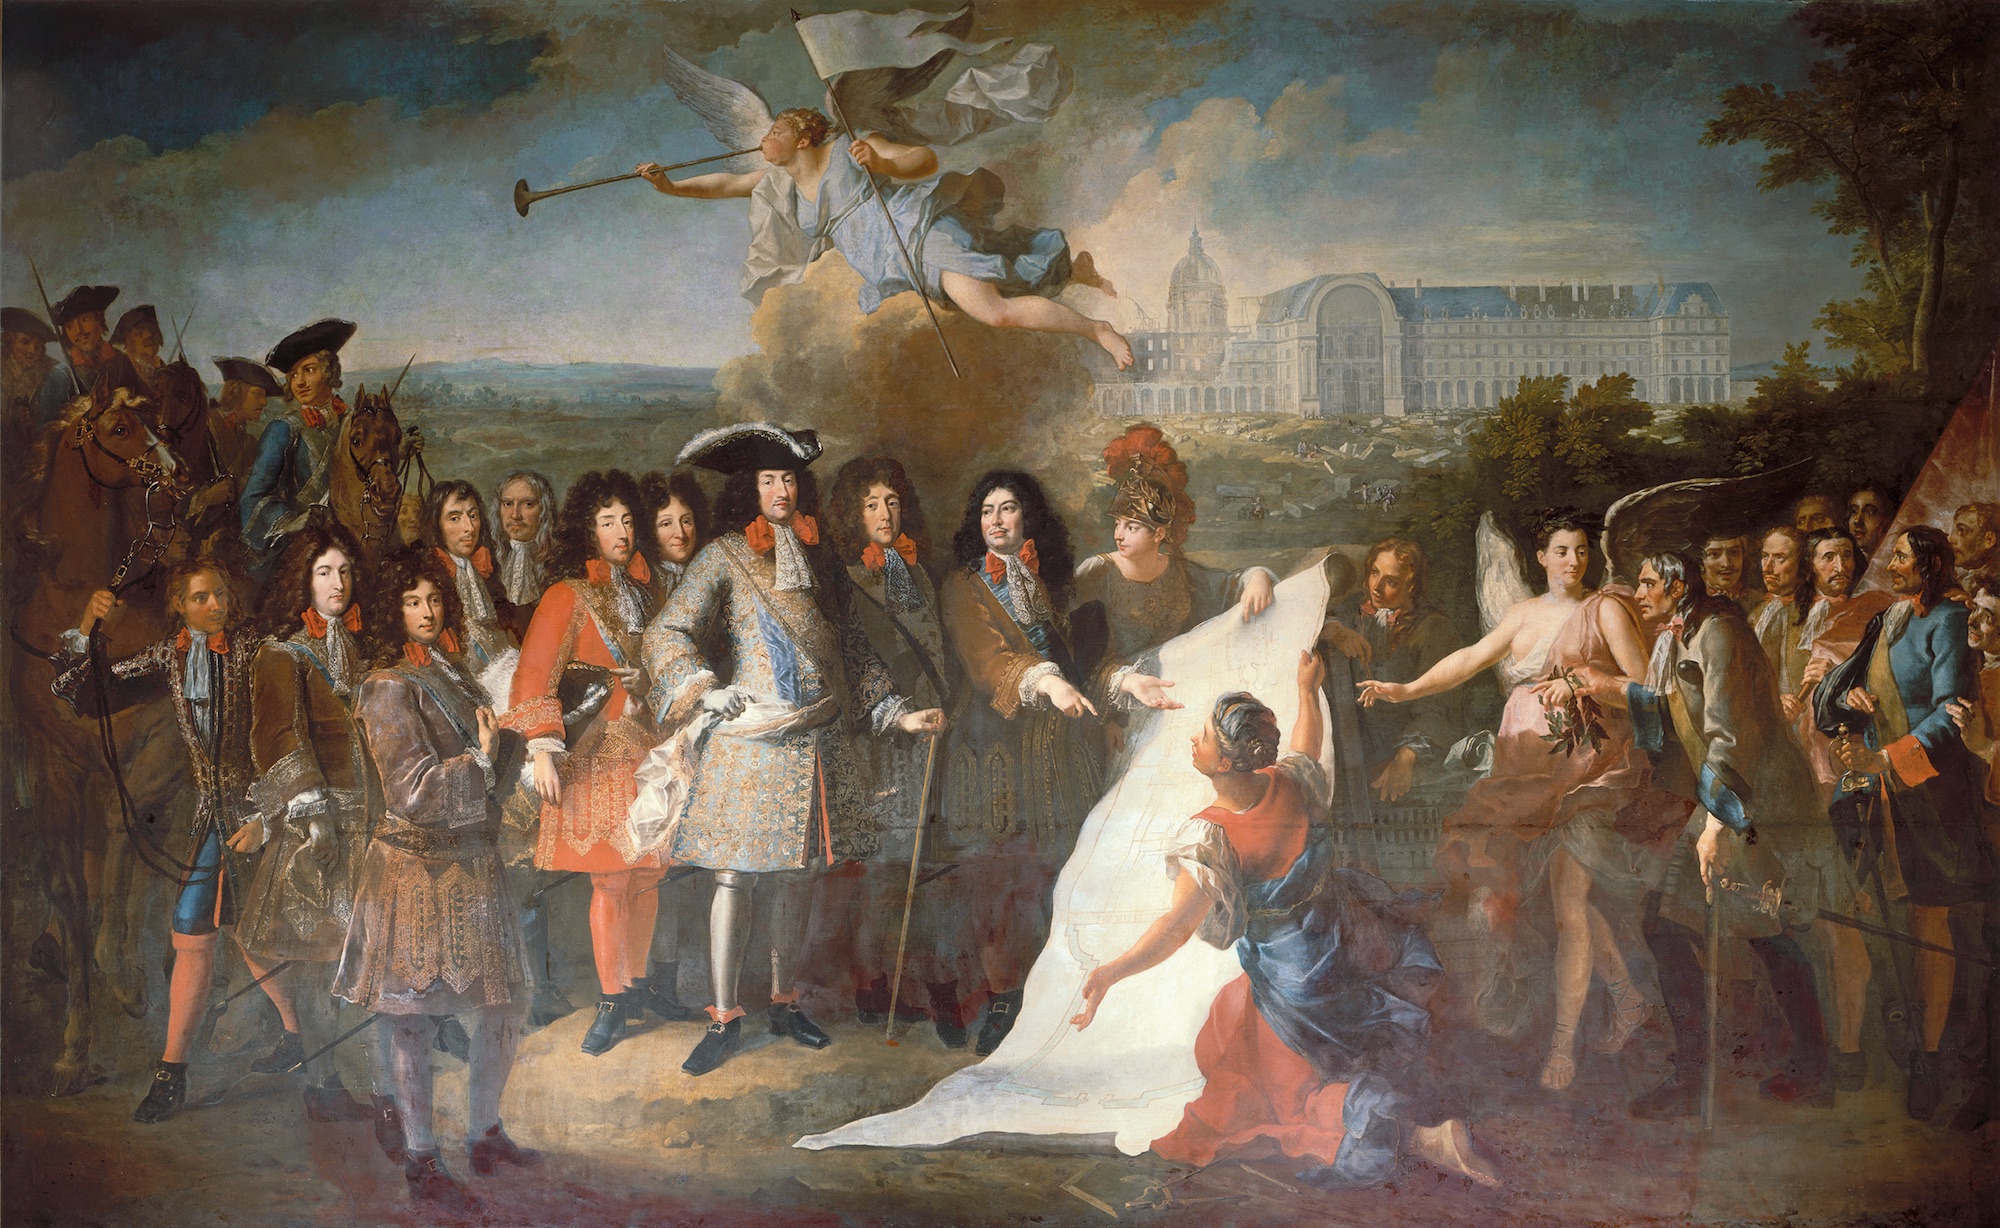 Pierre Dulin (1669-1748), L’établissement de l’Hôtel royal des Invalides. Le marquis de Louvois présente à Louis XIV le plan devant servir à la construction de l’Hôtel des Invalides. Carton de tapisserie commandé en 1710 et achevé en 1715 pour le cycle de L’Histoire du Roy. Huile sur toile, 353 x 578 cm. Paris, musée de l’Armée. © Dist. RMN-Grand Palais (musée de l’Armée) / Hubert Josse